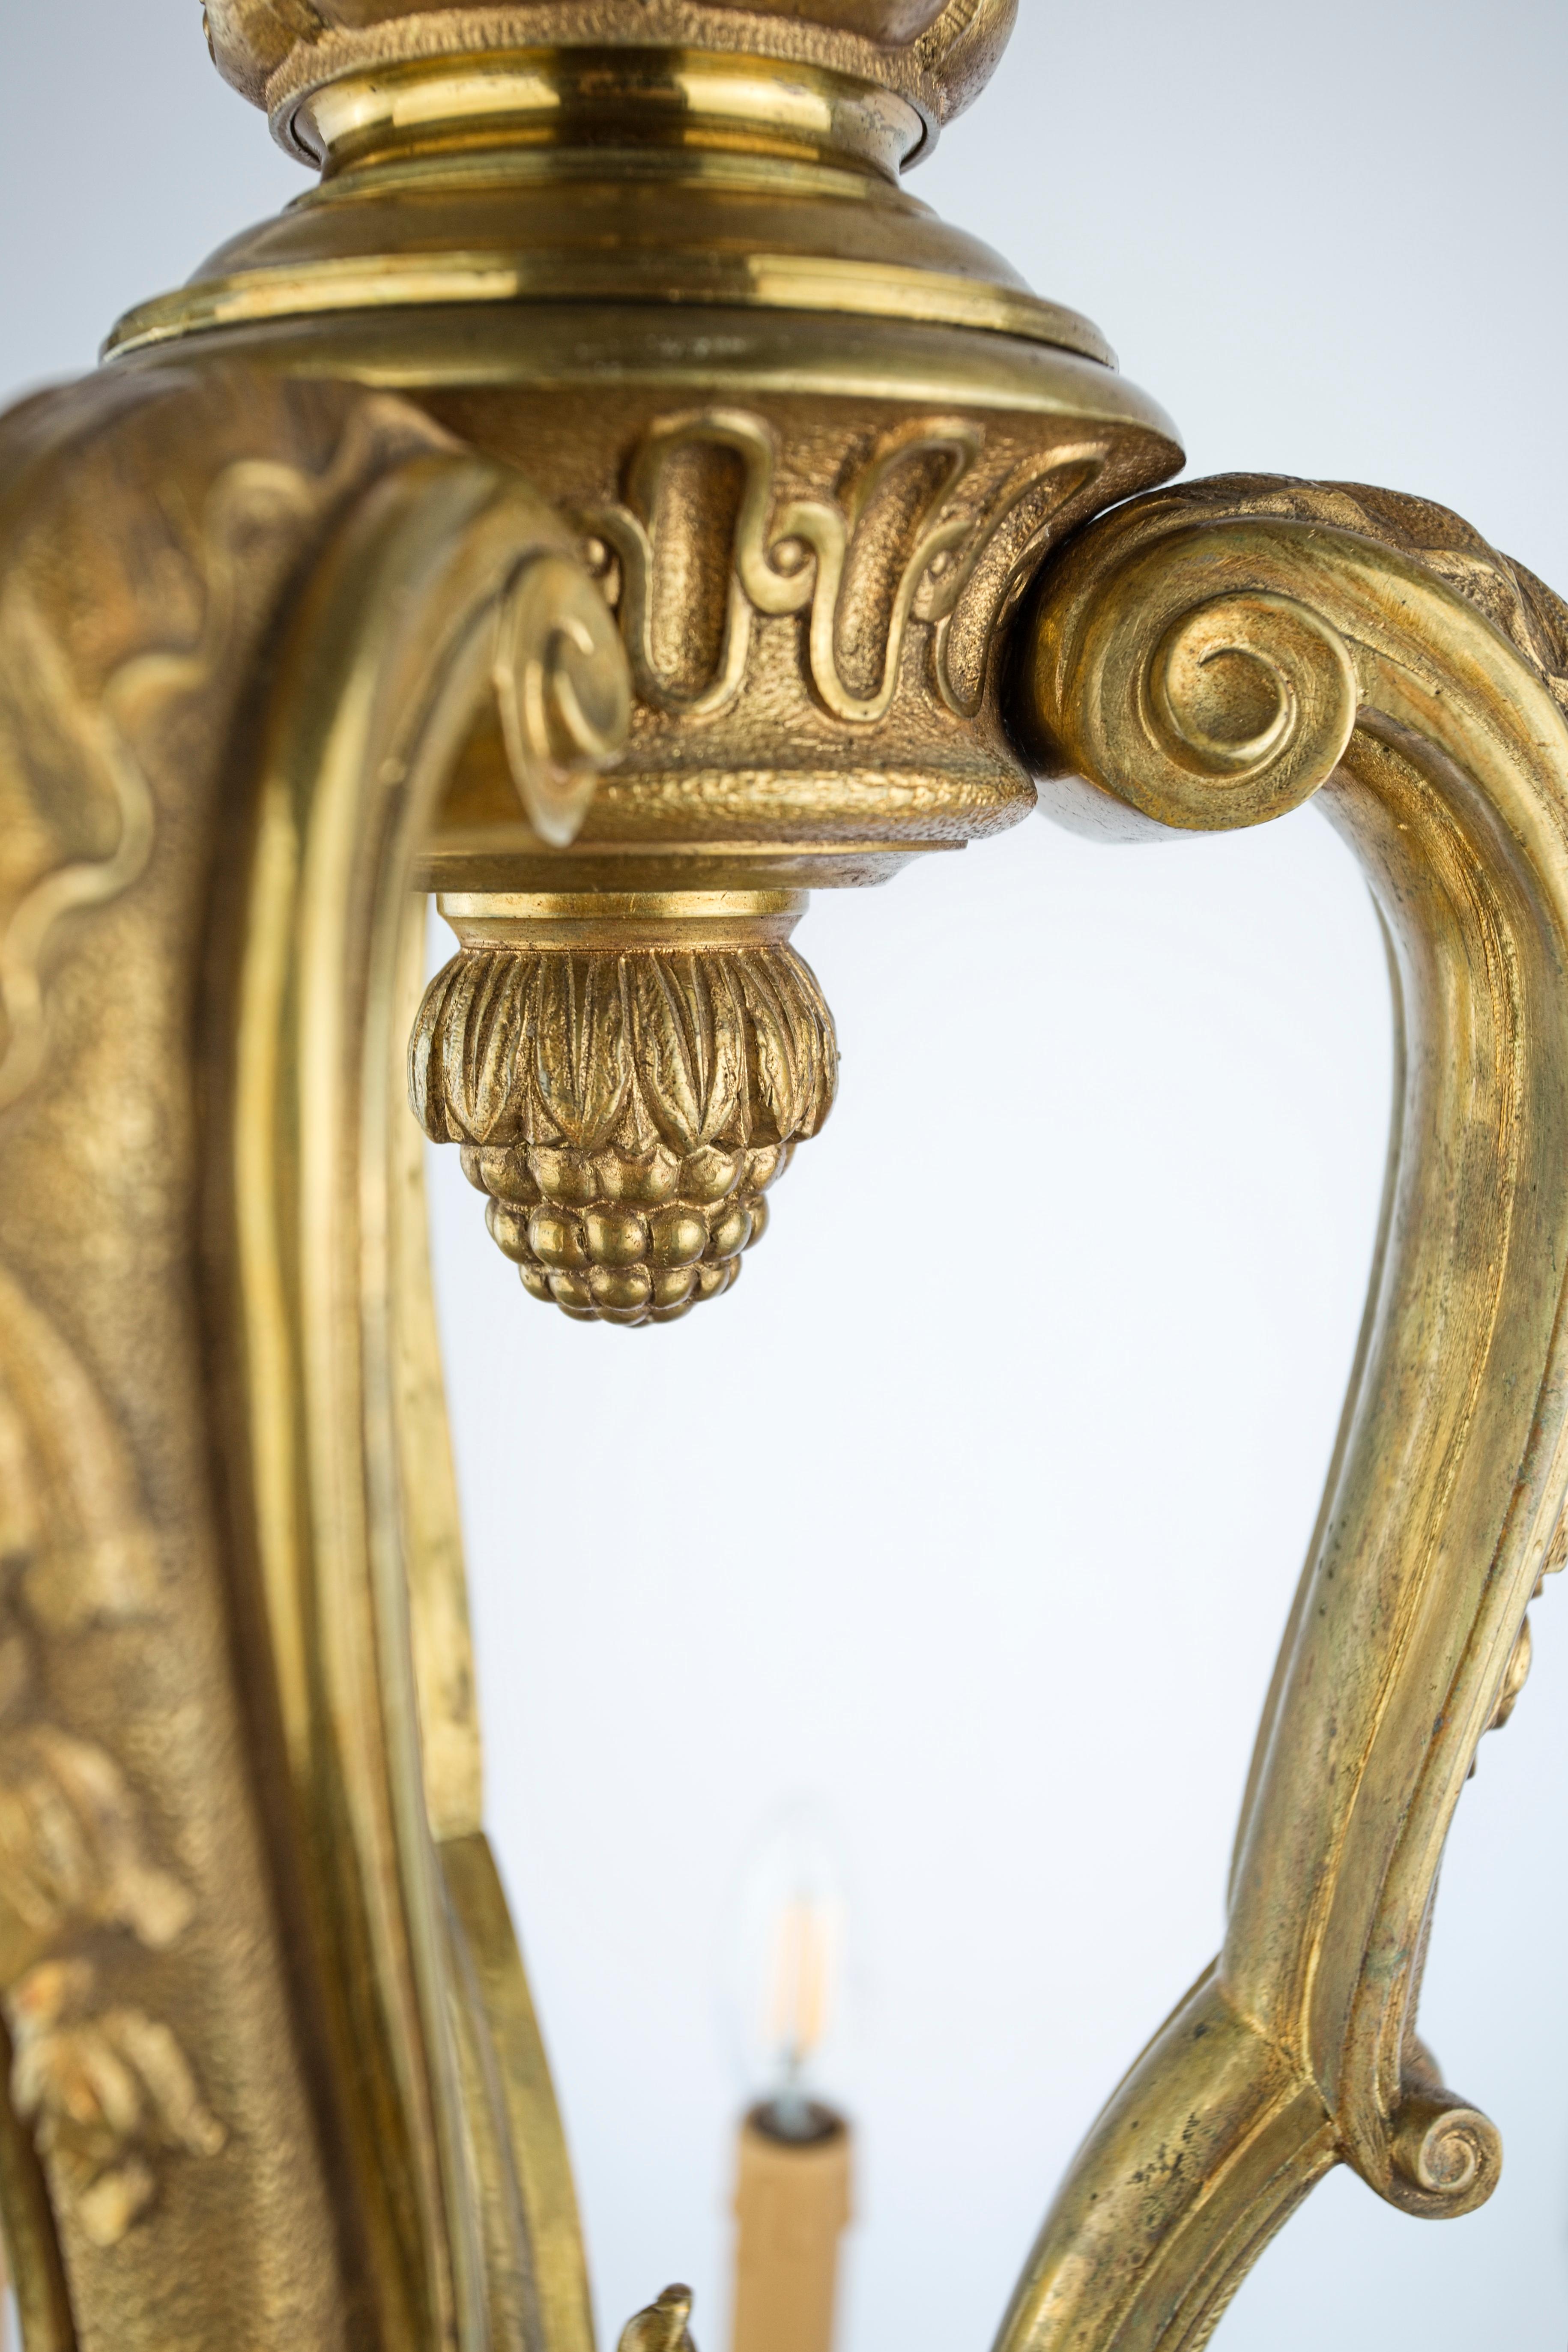 Antiker Mazarin-Kronleuchter aus Bronze. Vergoldet

Neunarmiger Mazarin-Kronleuchter aus vergoldeter Bronze. Spitzenqualität, die für Luxusvillen und Residenzen hergestellt wurde. Detaillierte Verarbeitung im Stil von Louis XIV. Zustand: restauriert